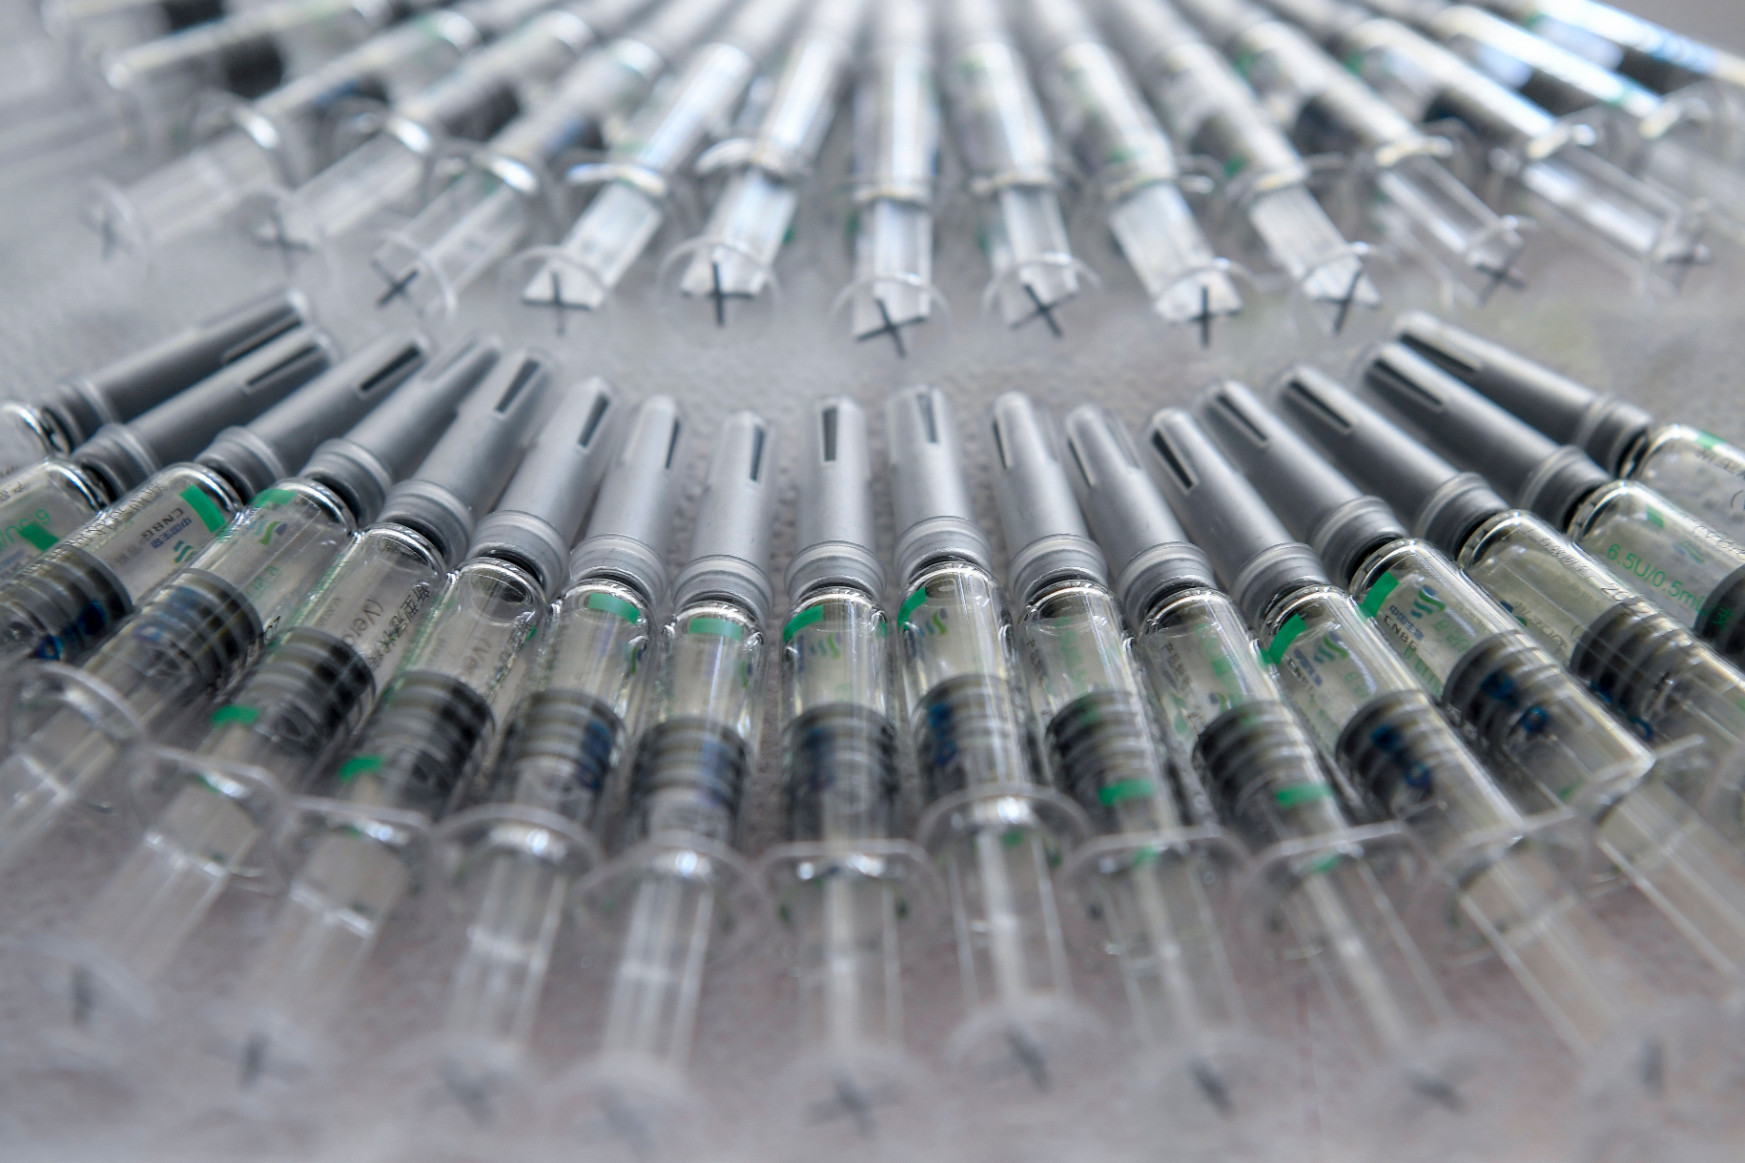 Rövid úton tisztázni lehetne, hogy rendben van-e a kínai vakcina, ha meglenne rá a szándék